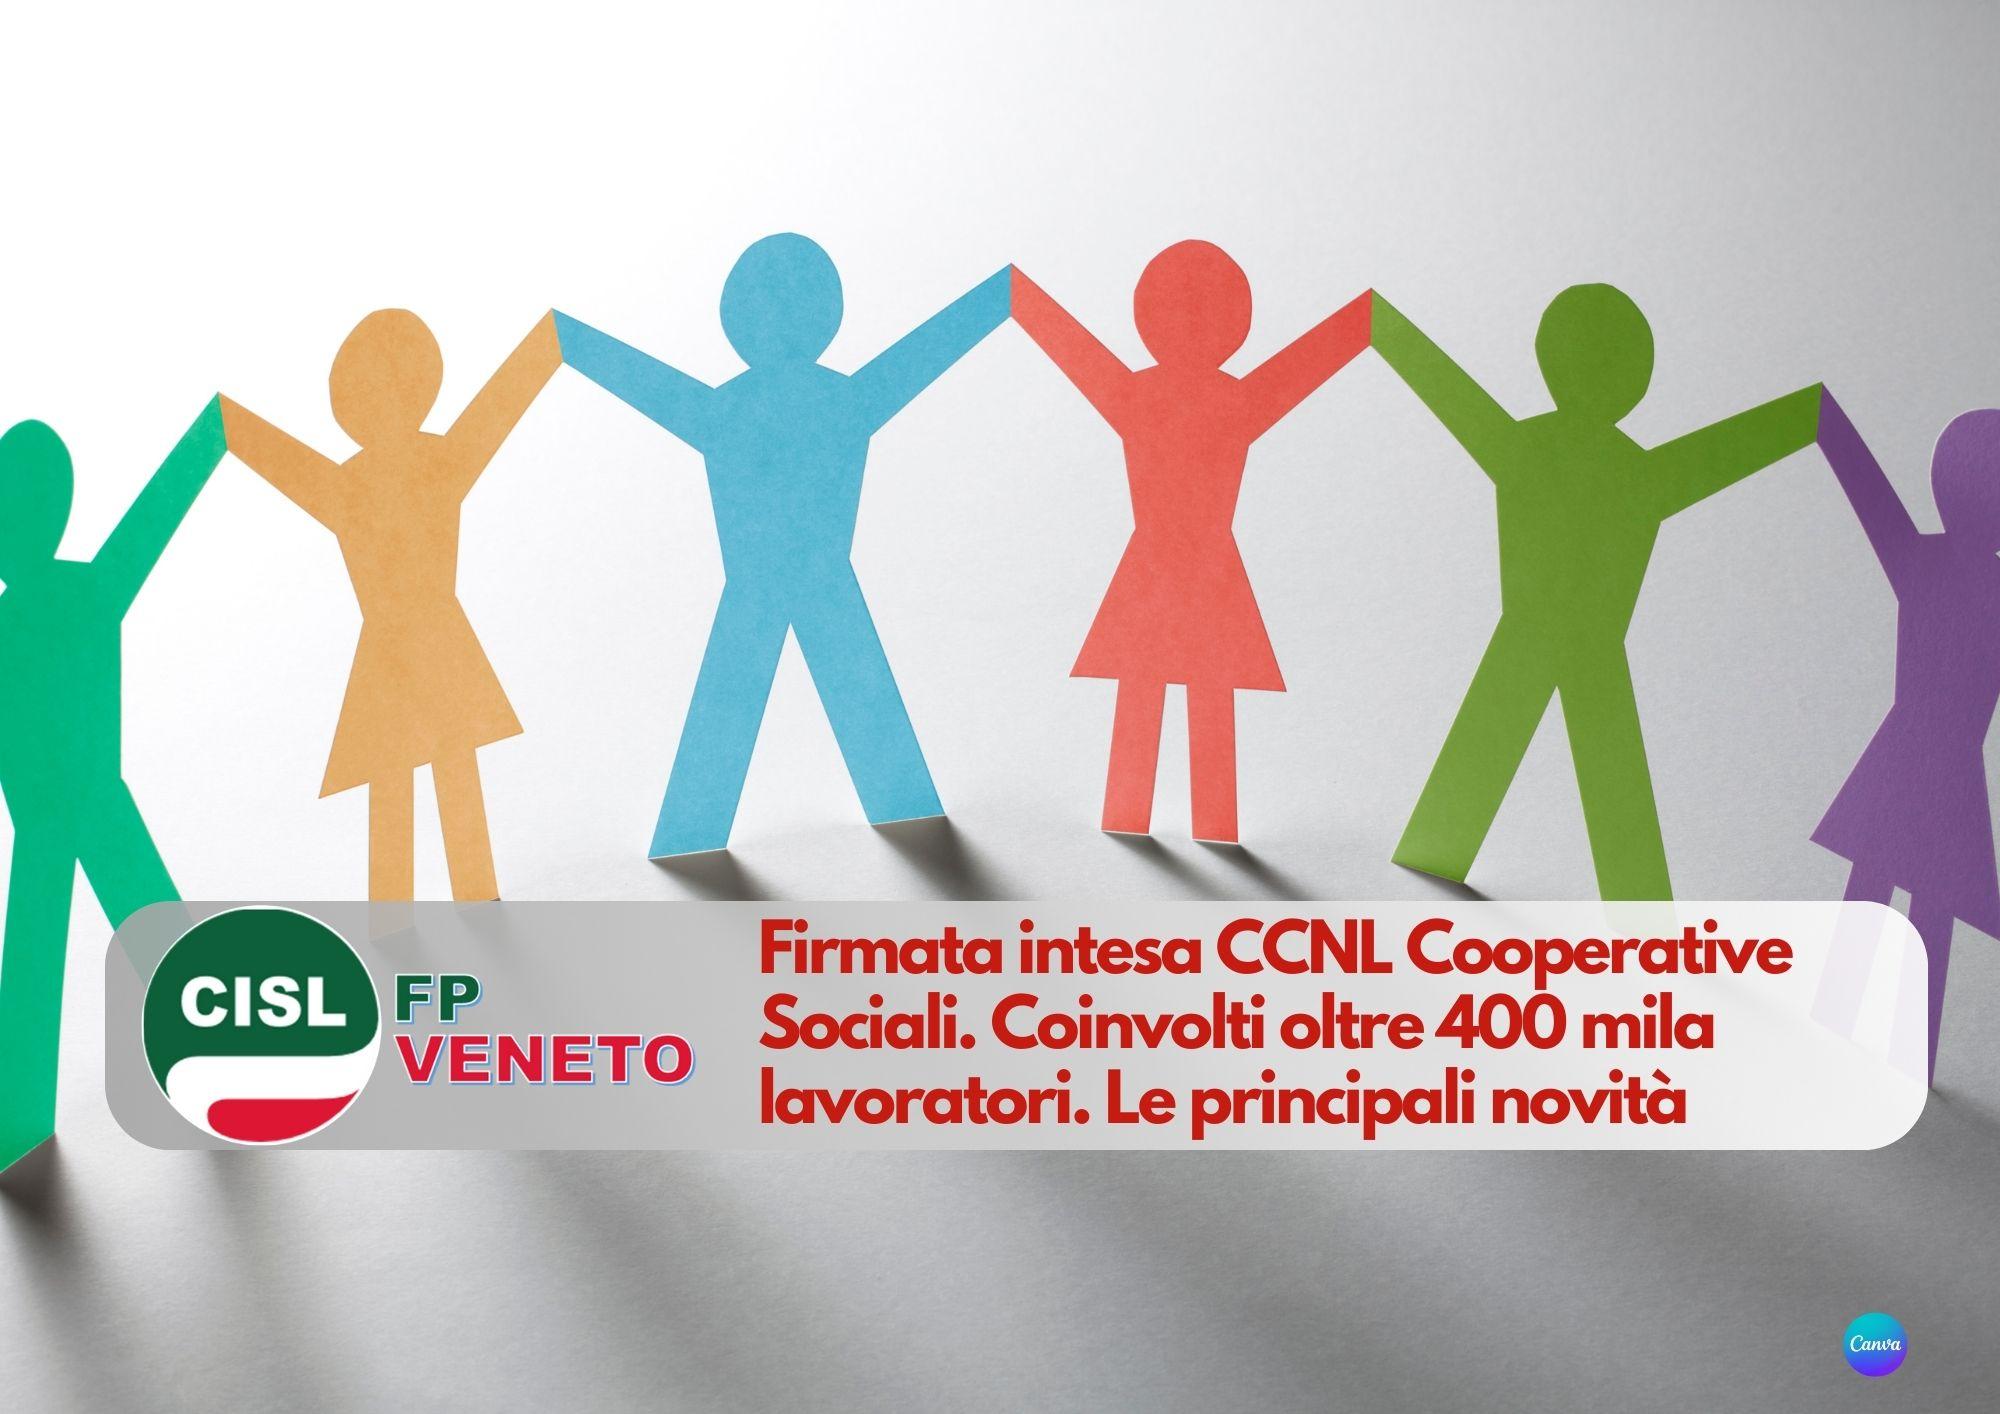 CISL FP Veneto.  Firmata intesa CCNL Cooperative Sociali. Coinvolti oltre 400 mila lavoratori. Le novità